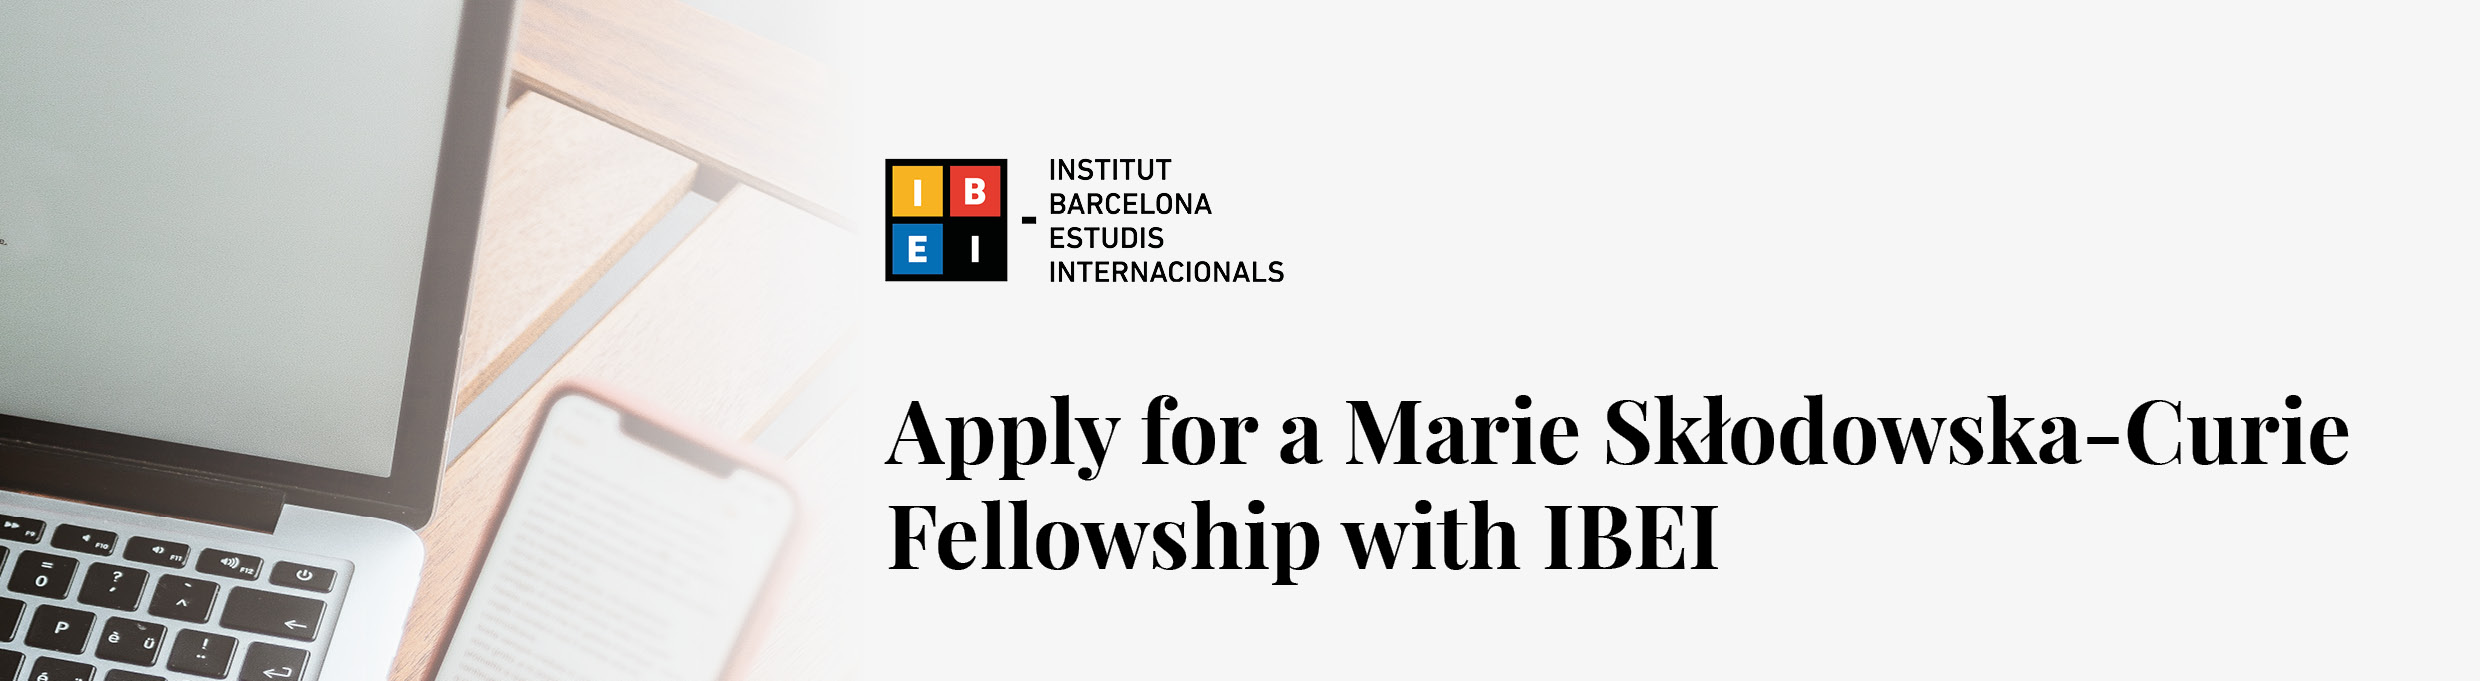 Apply for a Marie Skłodowska-Curie Fellowship with IBEI